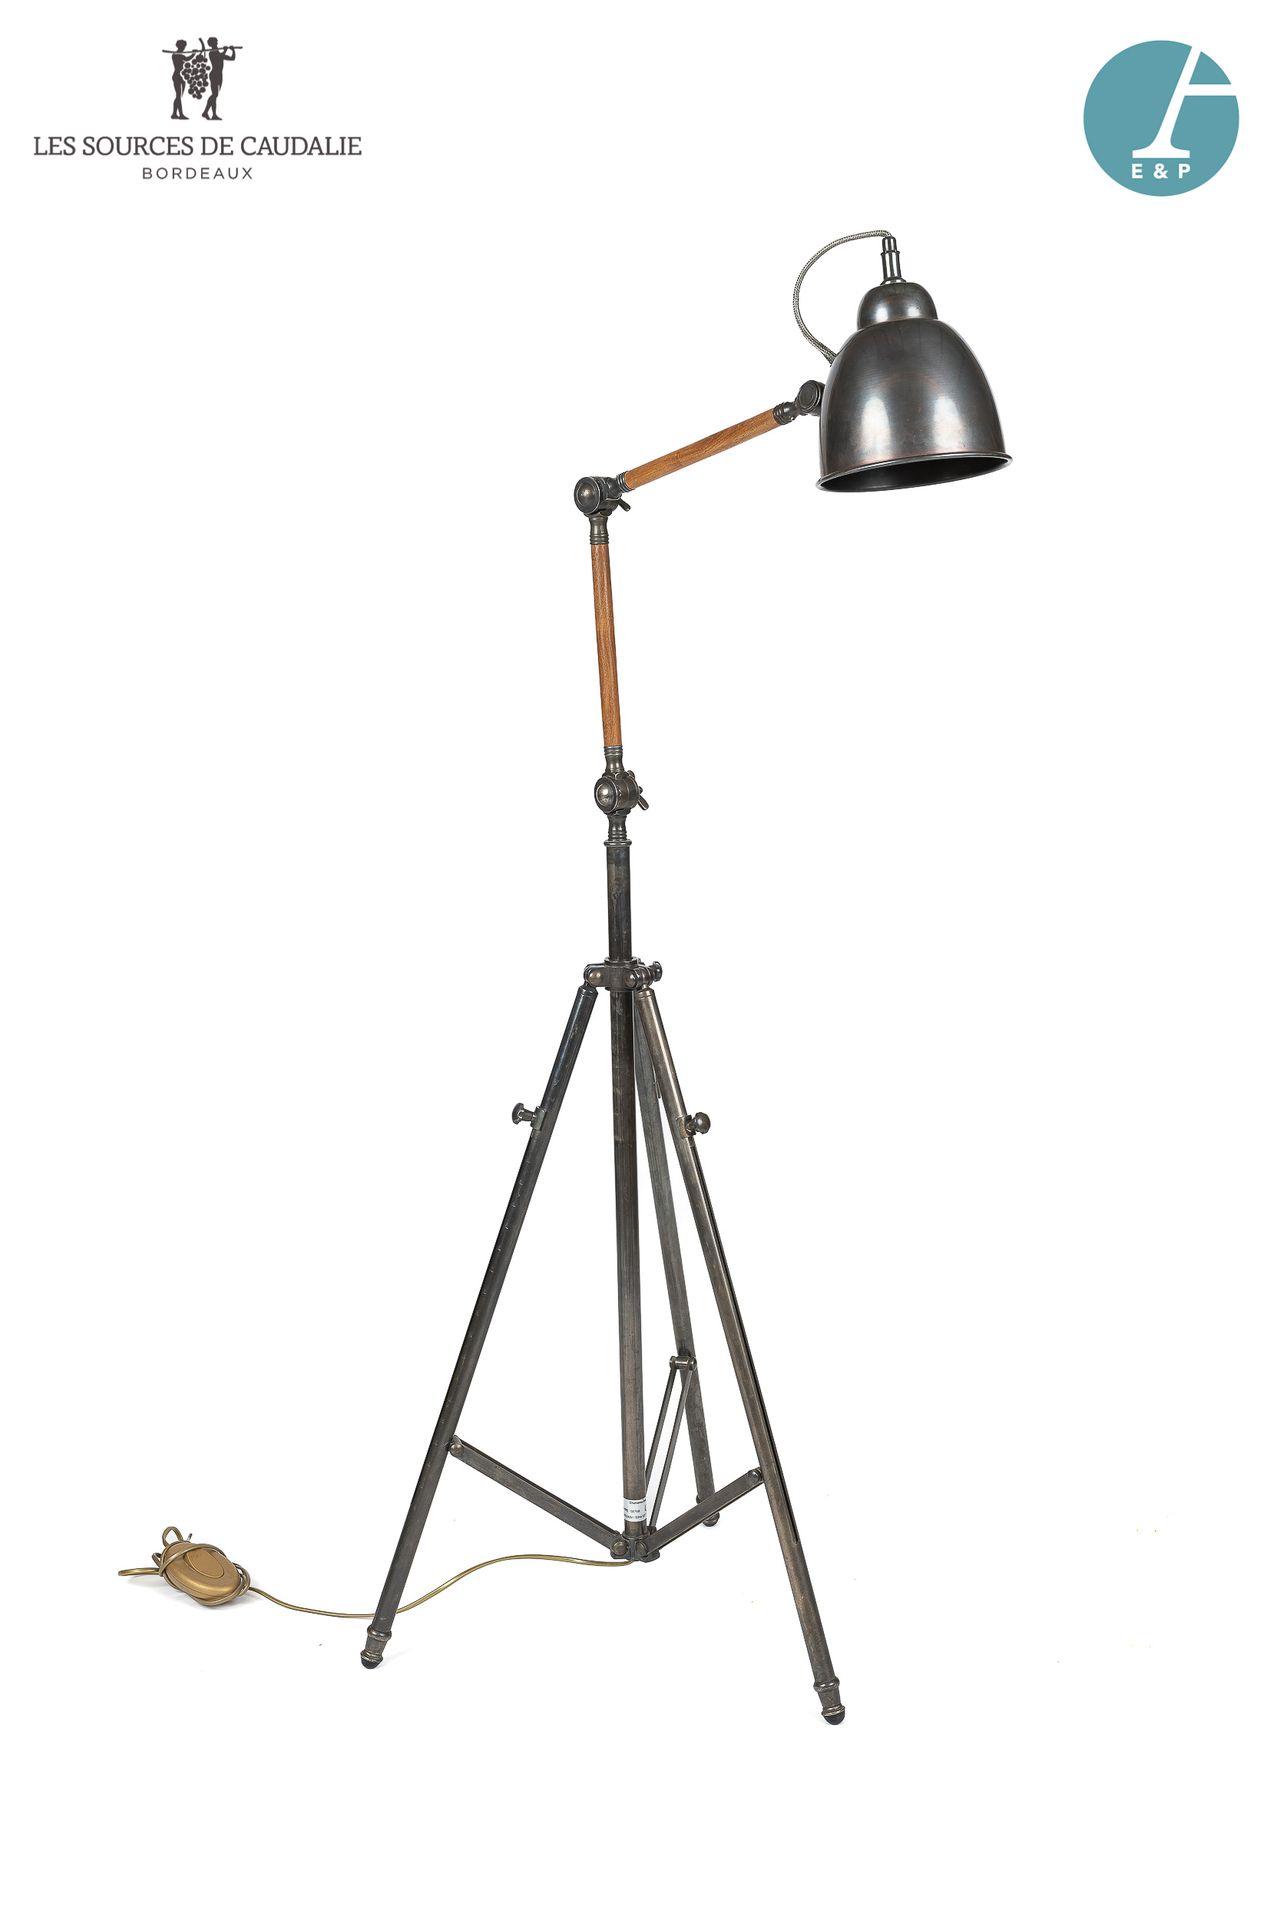 Null Gelenkige Stehlampe aus Metall und Holz im Industriestil.

H: 177,5cm